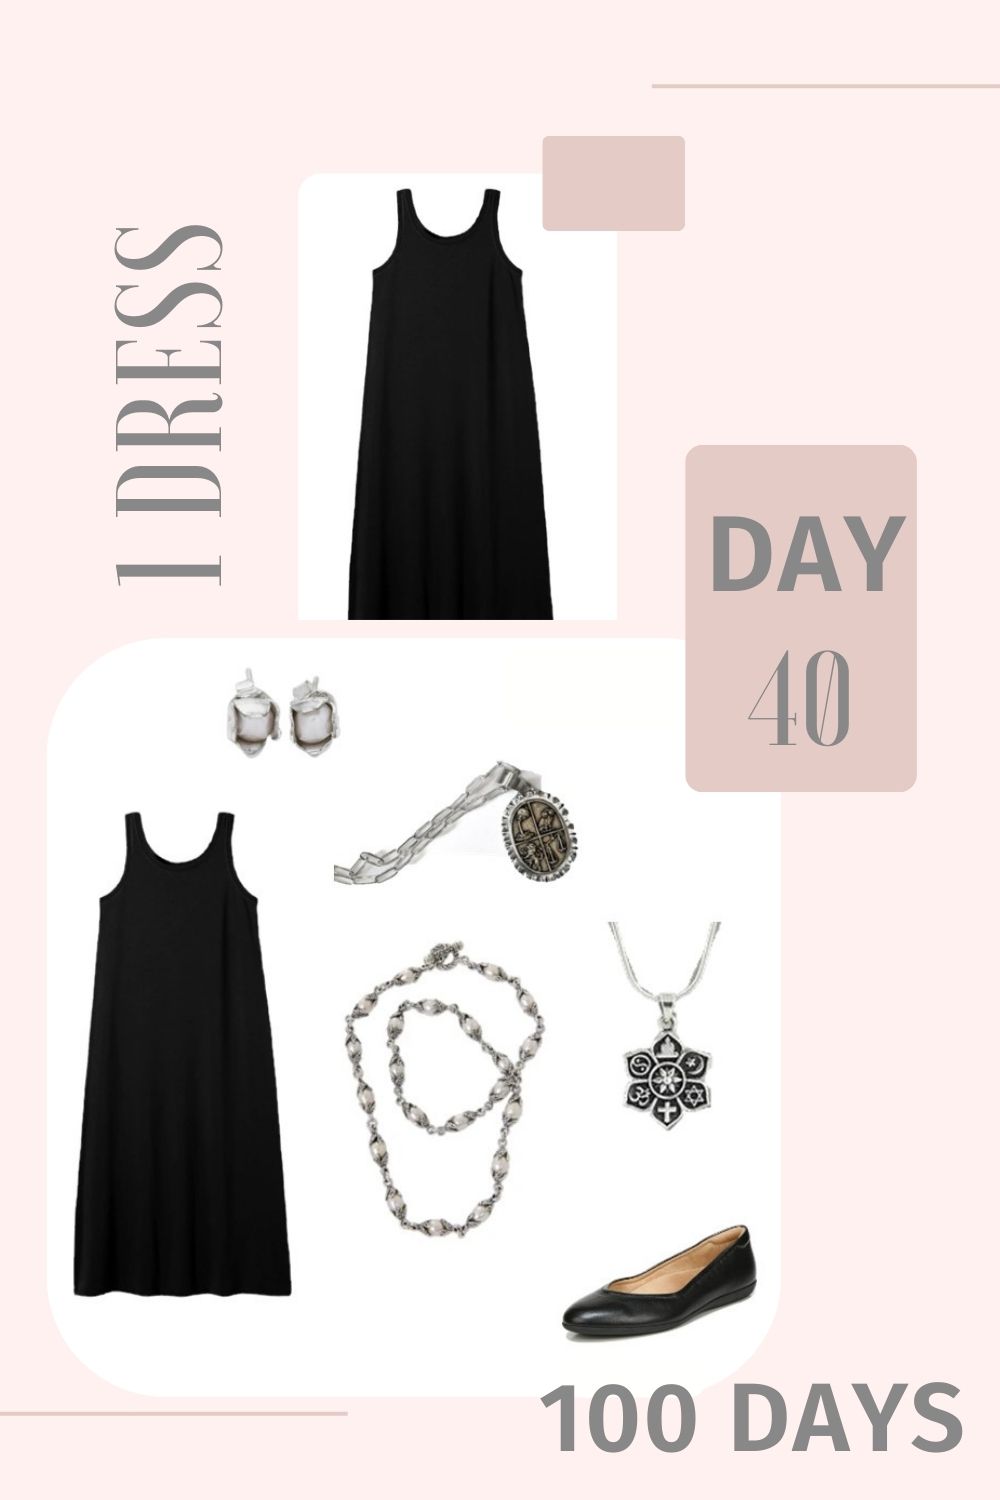 1 Dress 100 Days - Day 40